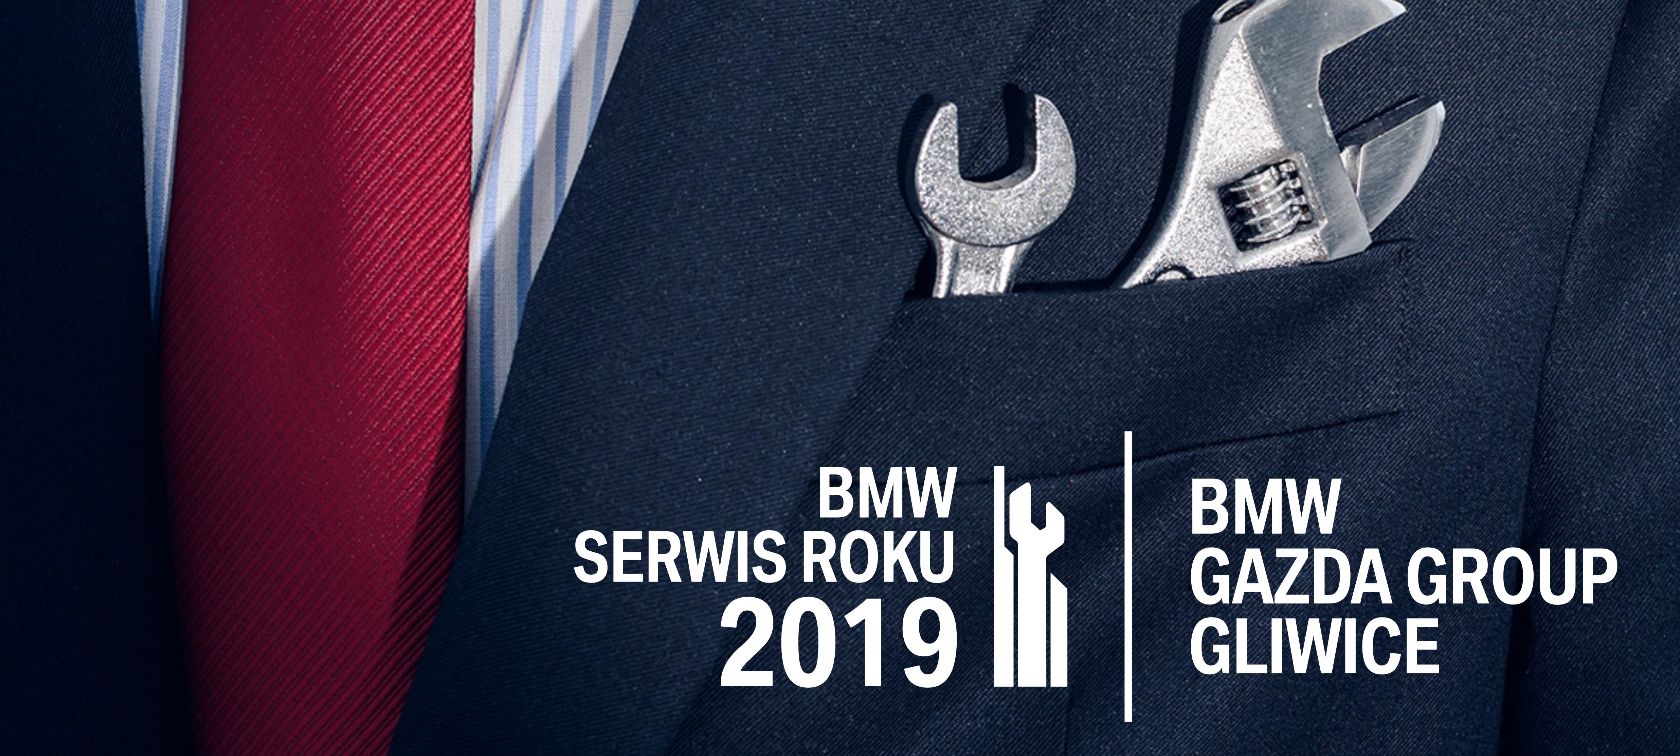 BMW serwis roku 2019